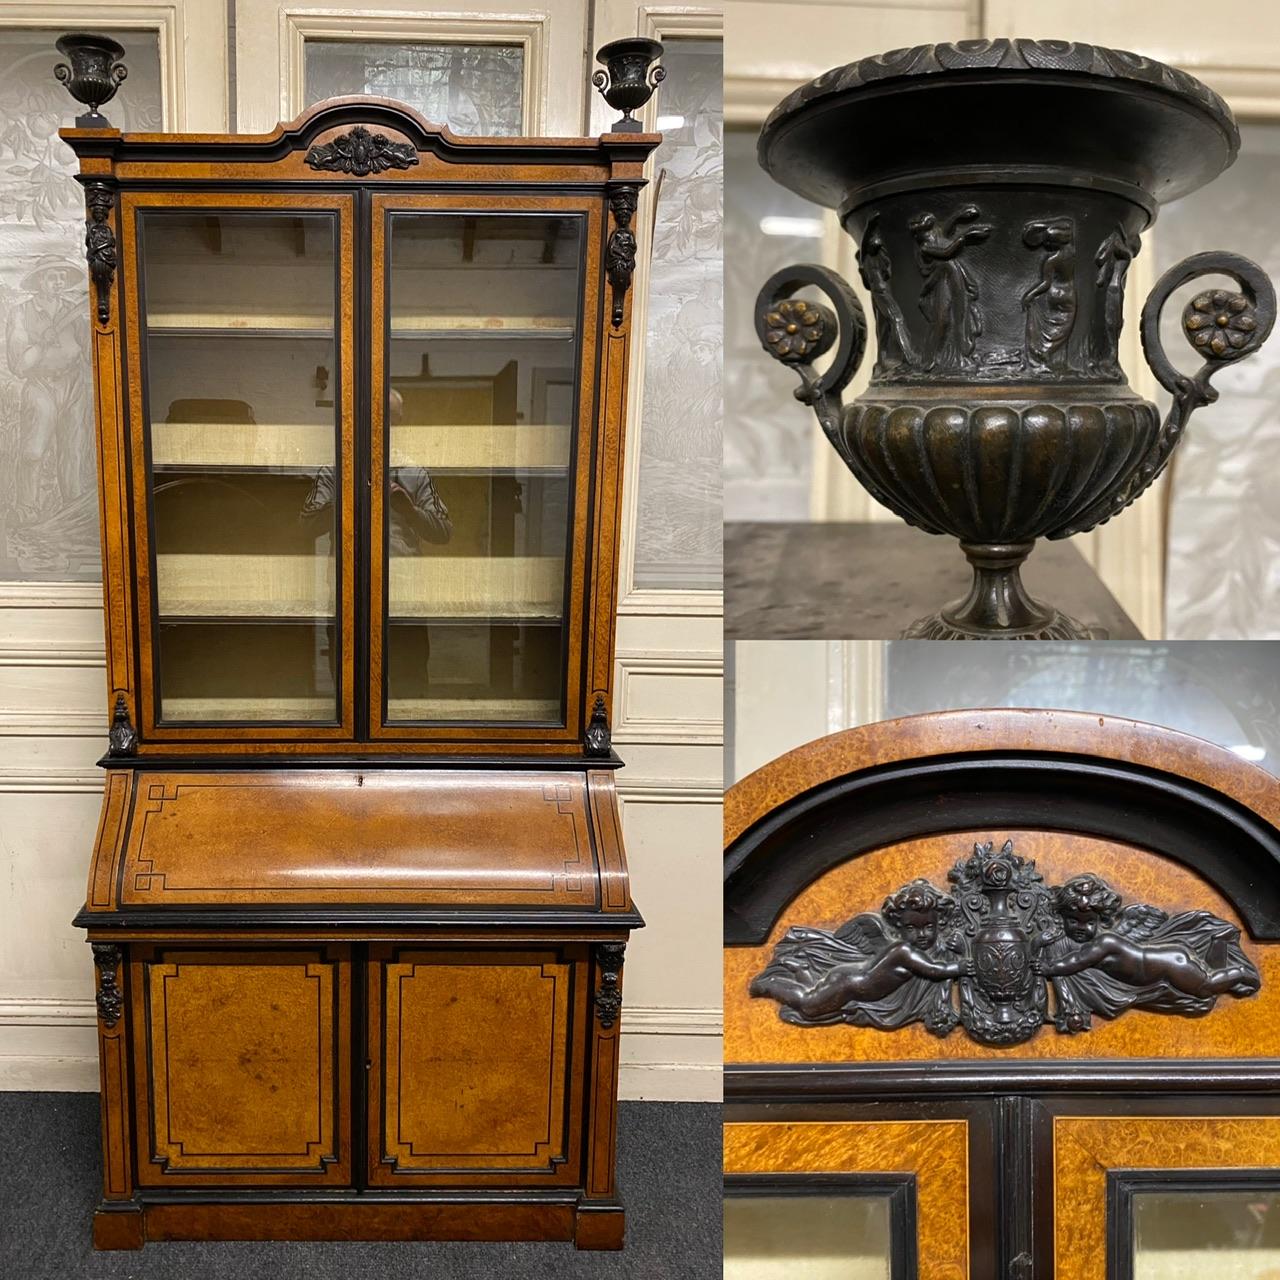 Un superbe meuble du 19ème siècle, fabriqué en Italie principalement en bois d'Amboyna mais aussi en Ebène. Les 2 urnes du dessus sont en bronze ainsi que les supports. Les 2 portes supérieures sont équipées de verre plat et s'ouvrent pour révéler 3